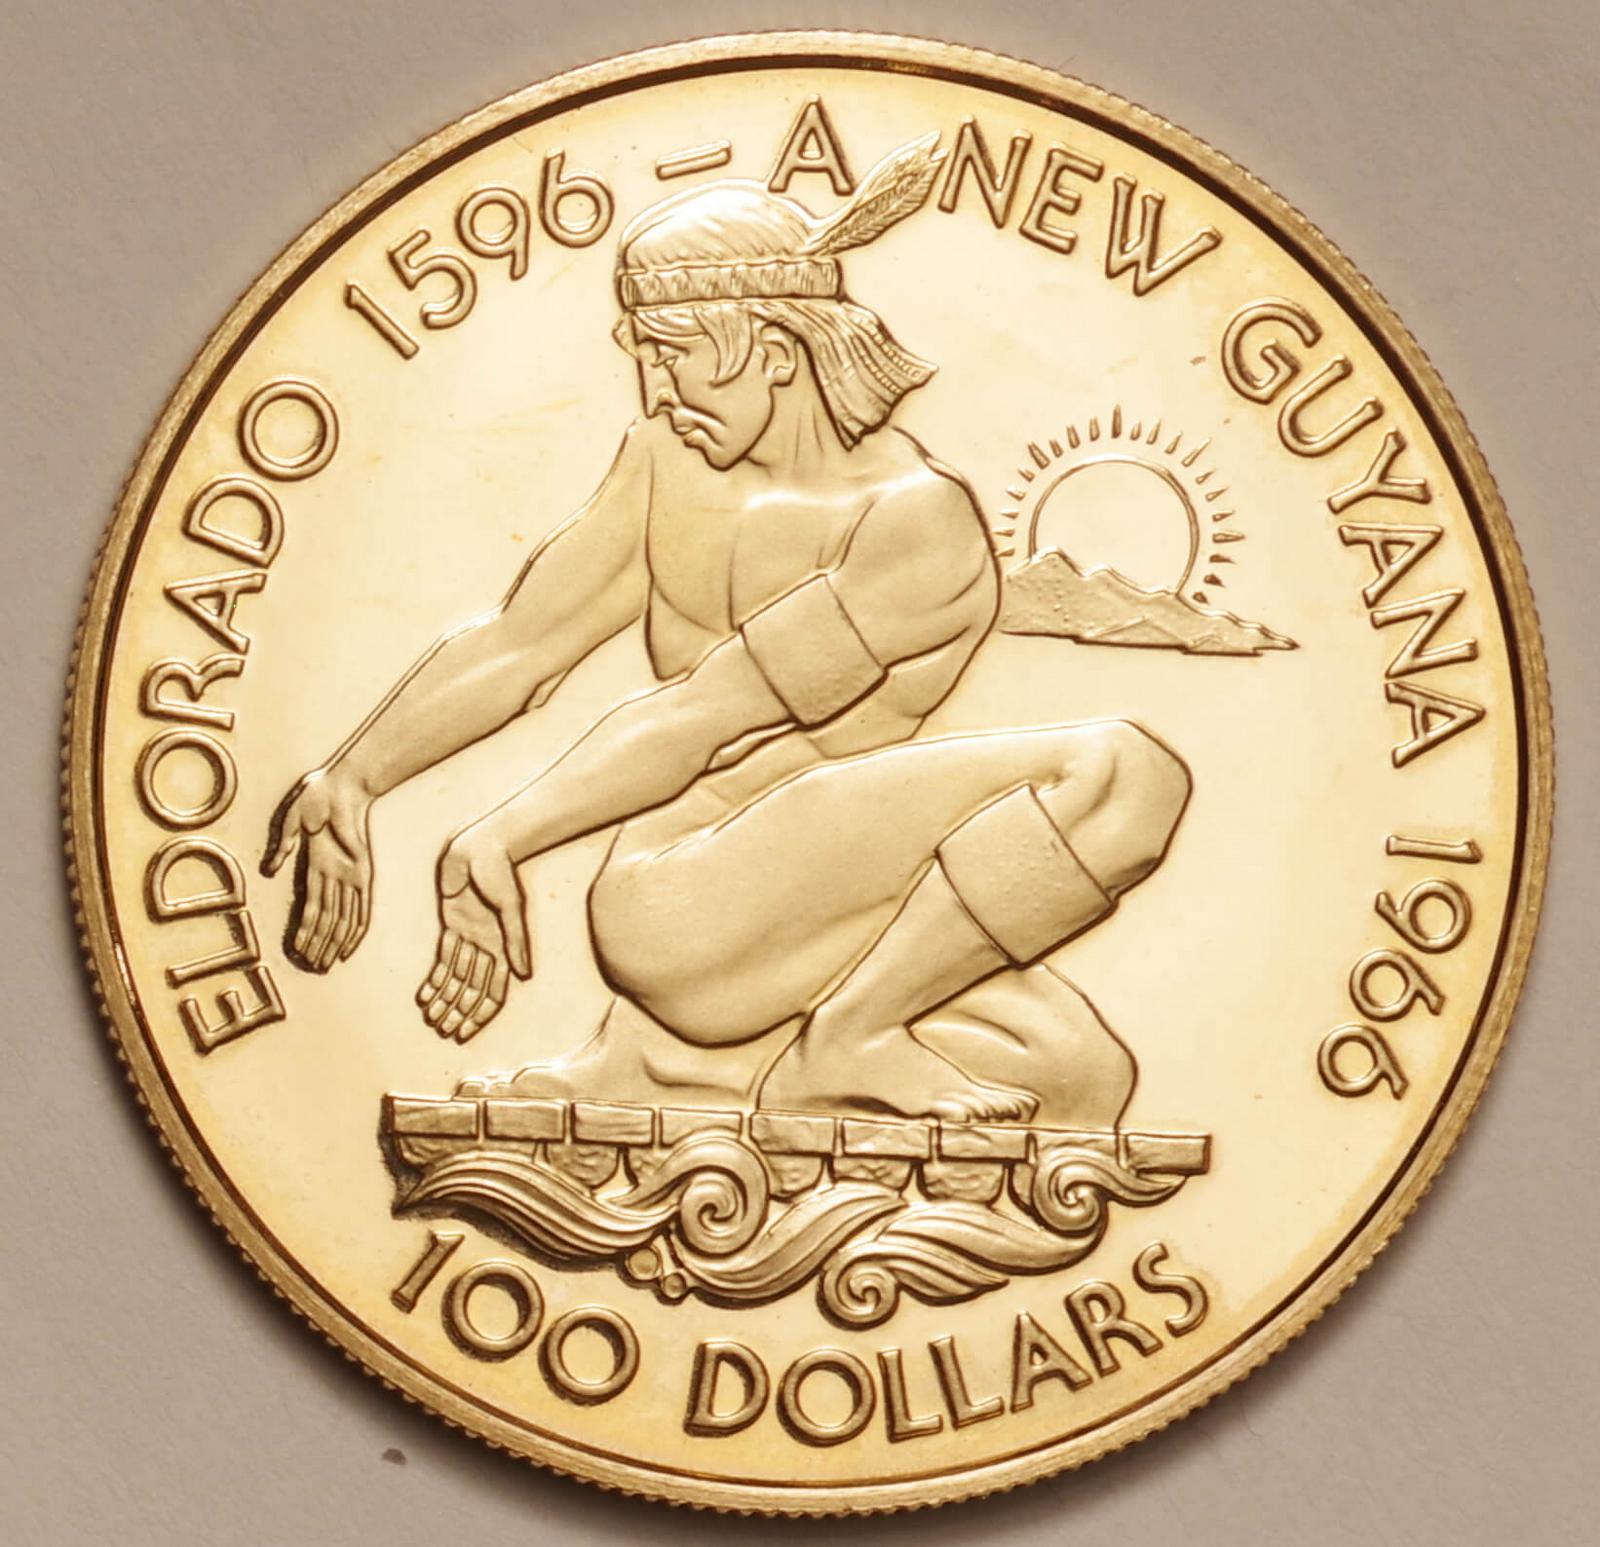 古銭【◎最高鑑定】金貨 ガイアナ $100 1976 NGC アンティークコイン